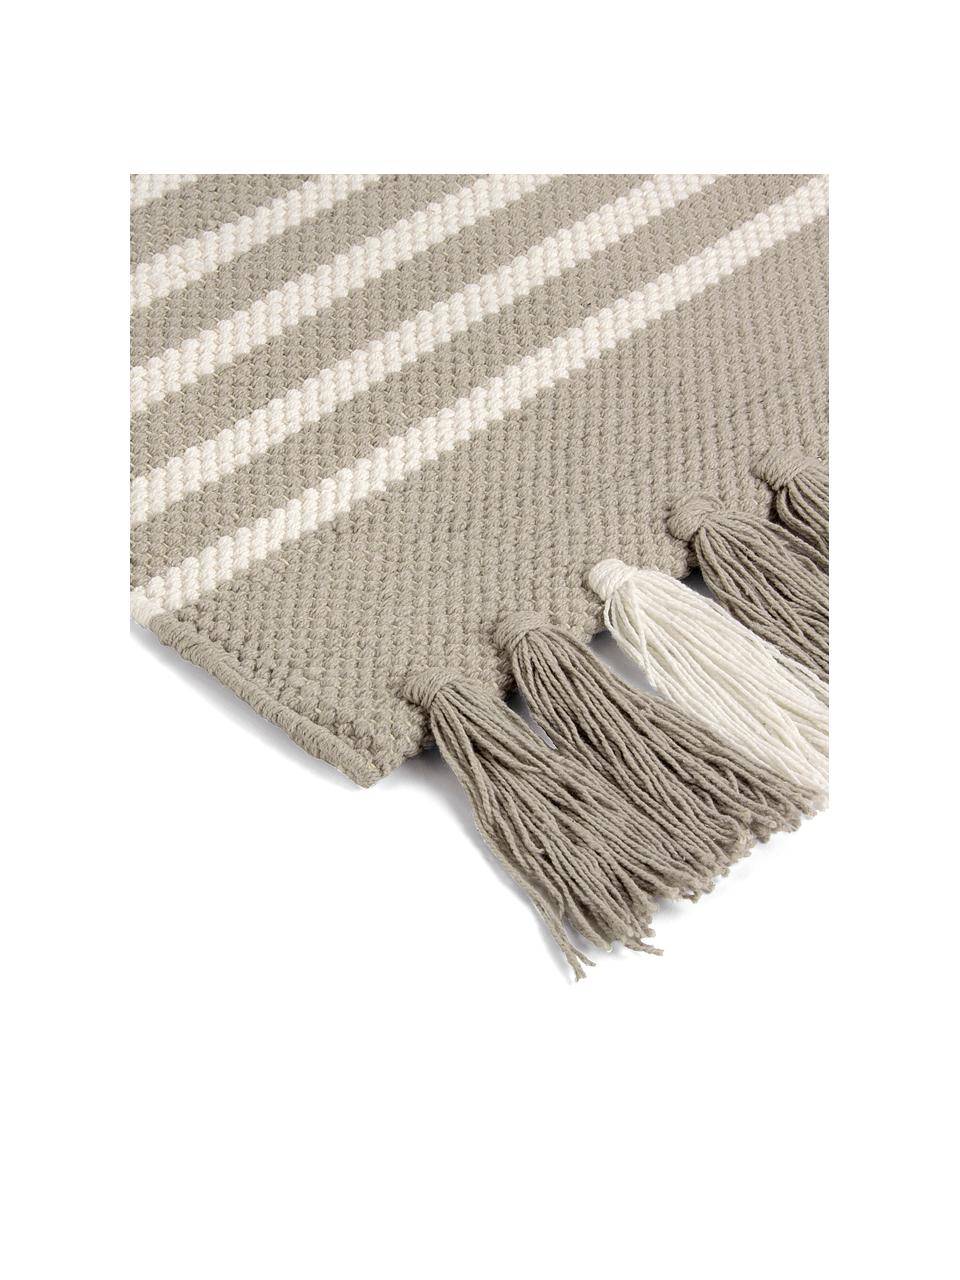 Gestreifter Badvorleger Stripes & Structure mit Fransenabschluss, 100% Baumwolle, Beige, gebrochenes Weiß, B 60 x L 100 cm